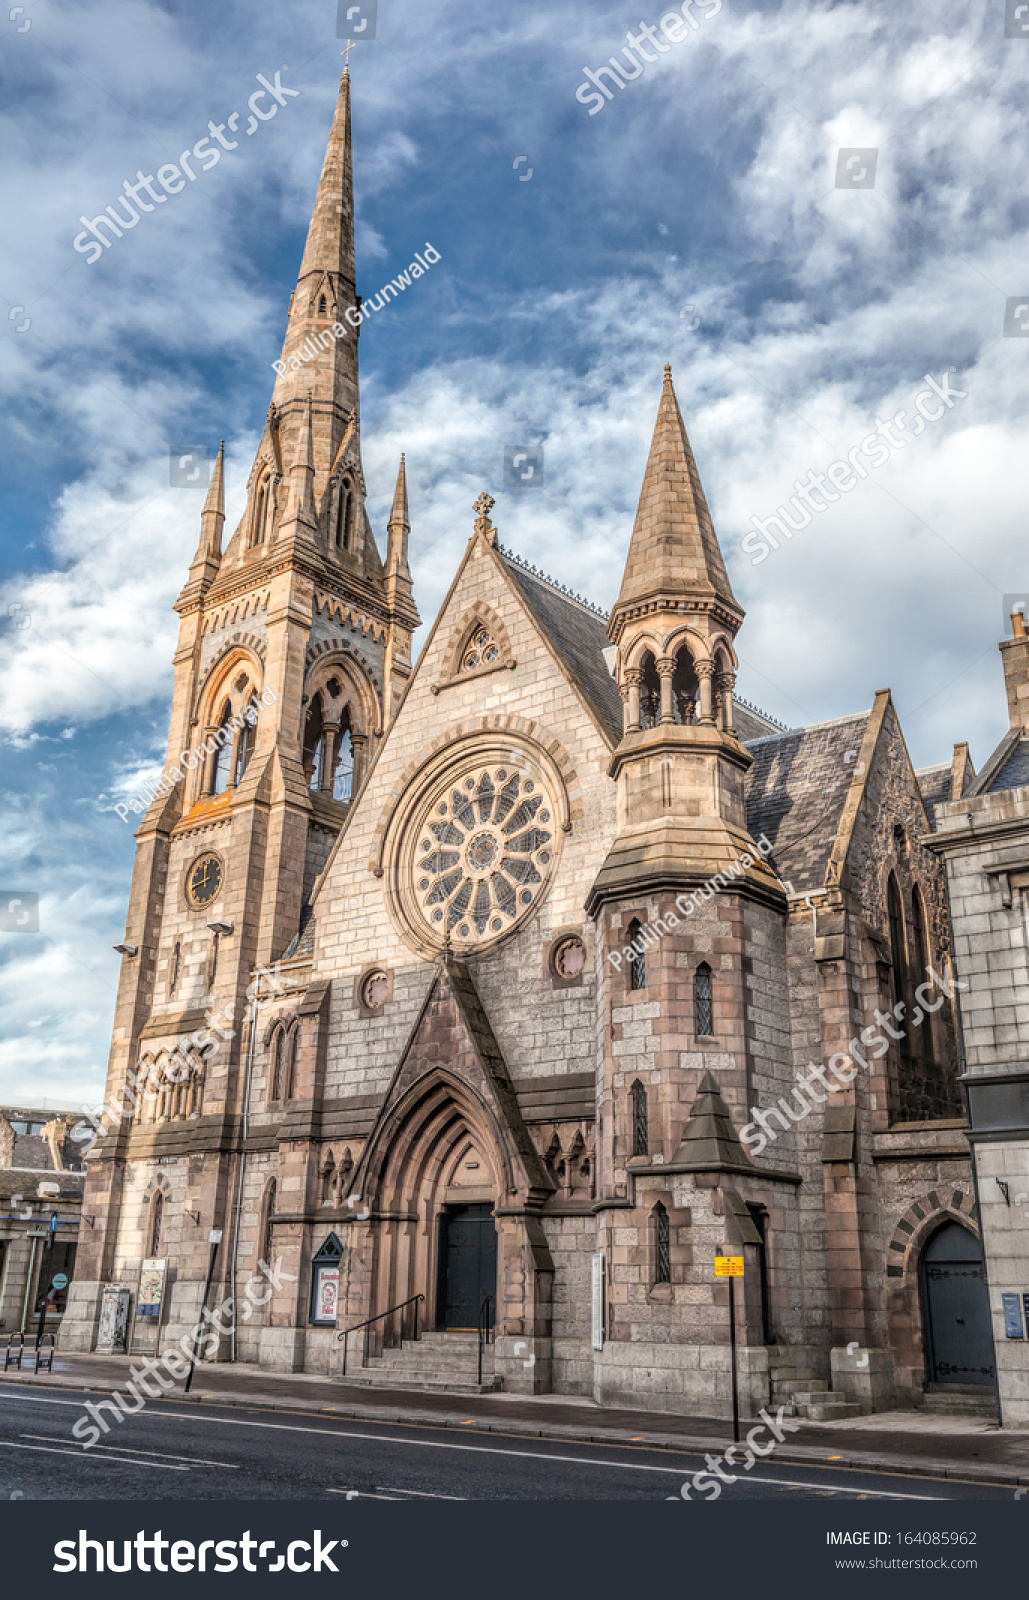 Gilcomston South Church in Aberdeen, Scotland #164085962